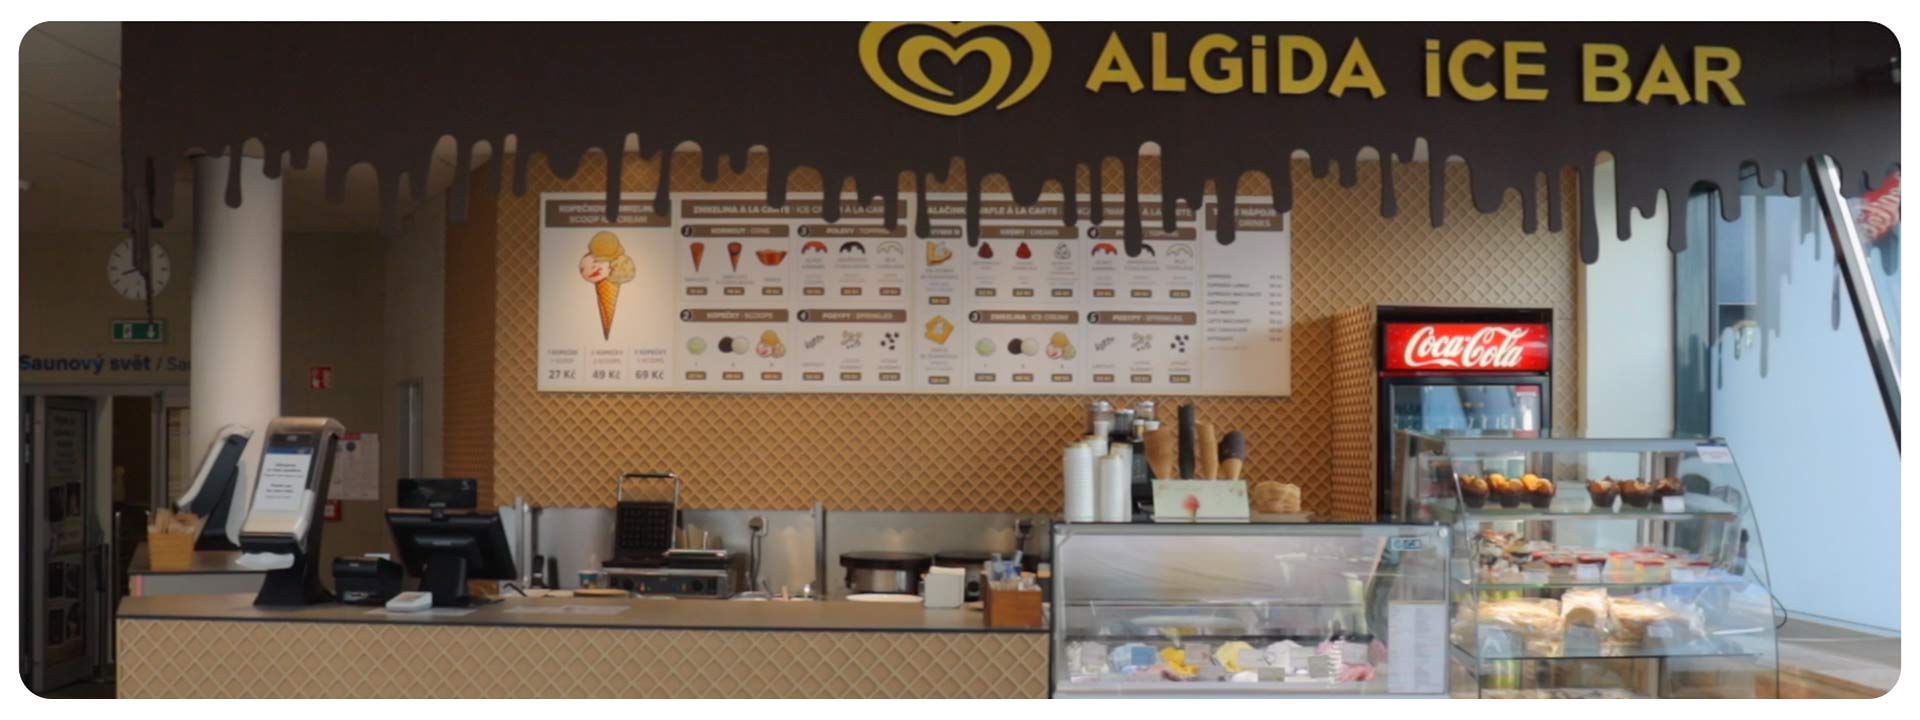 Algida Ice Bar